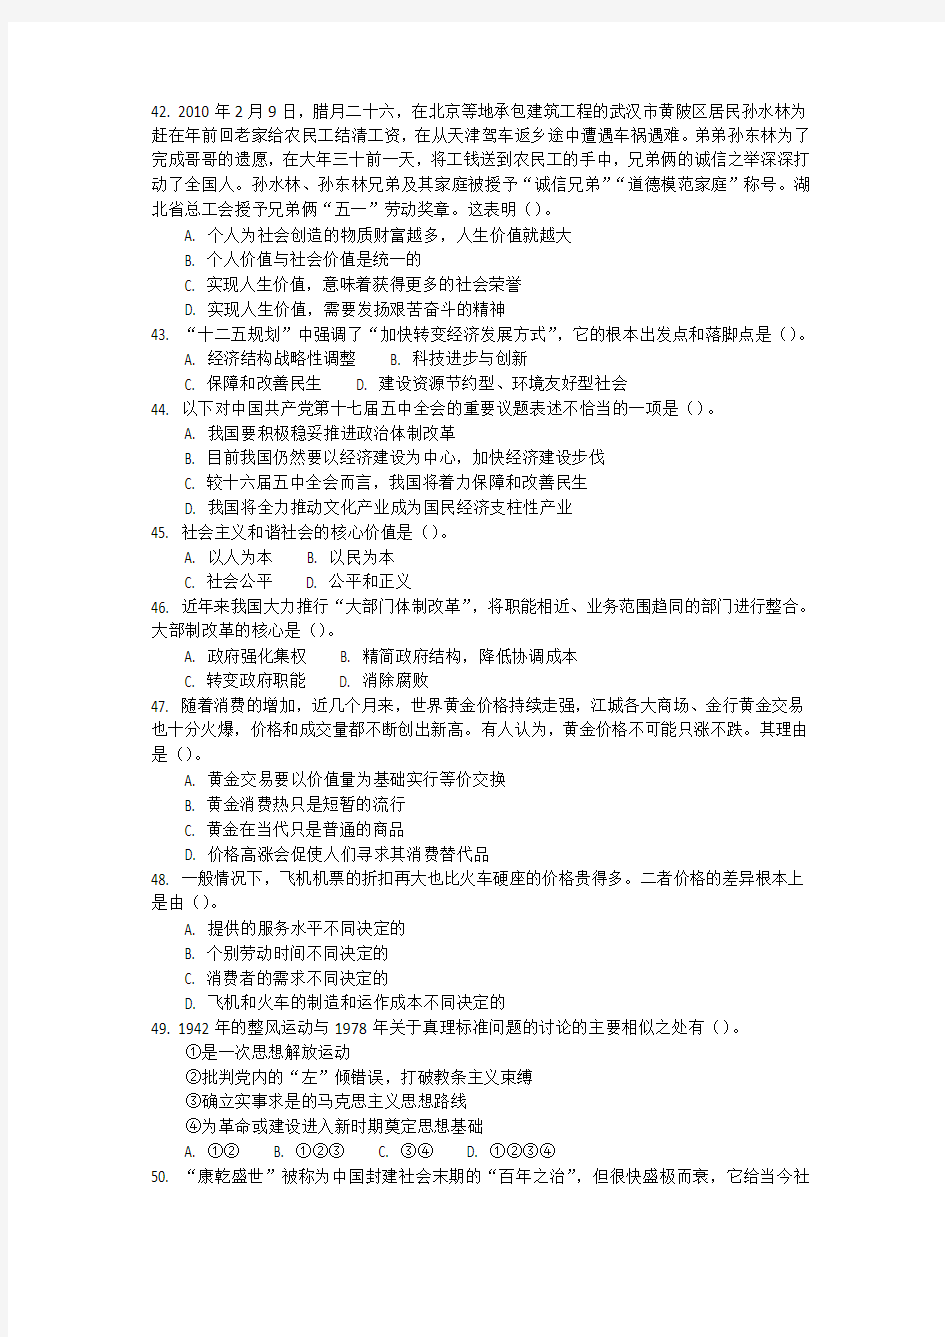 2011年武汉市事业单位考试公共基础知识真题及答案